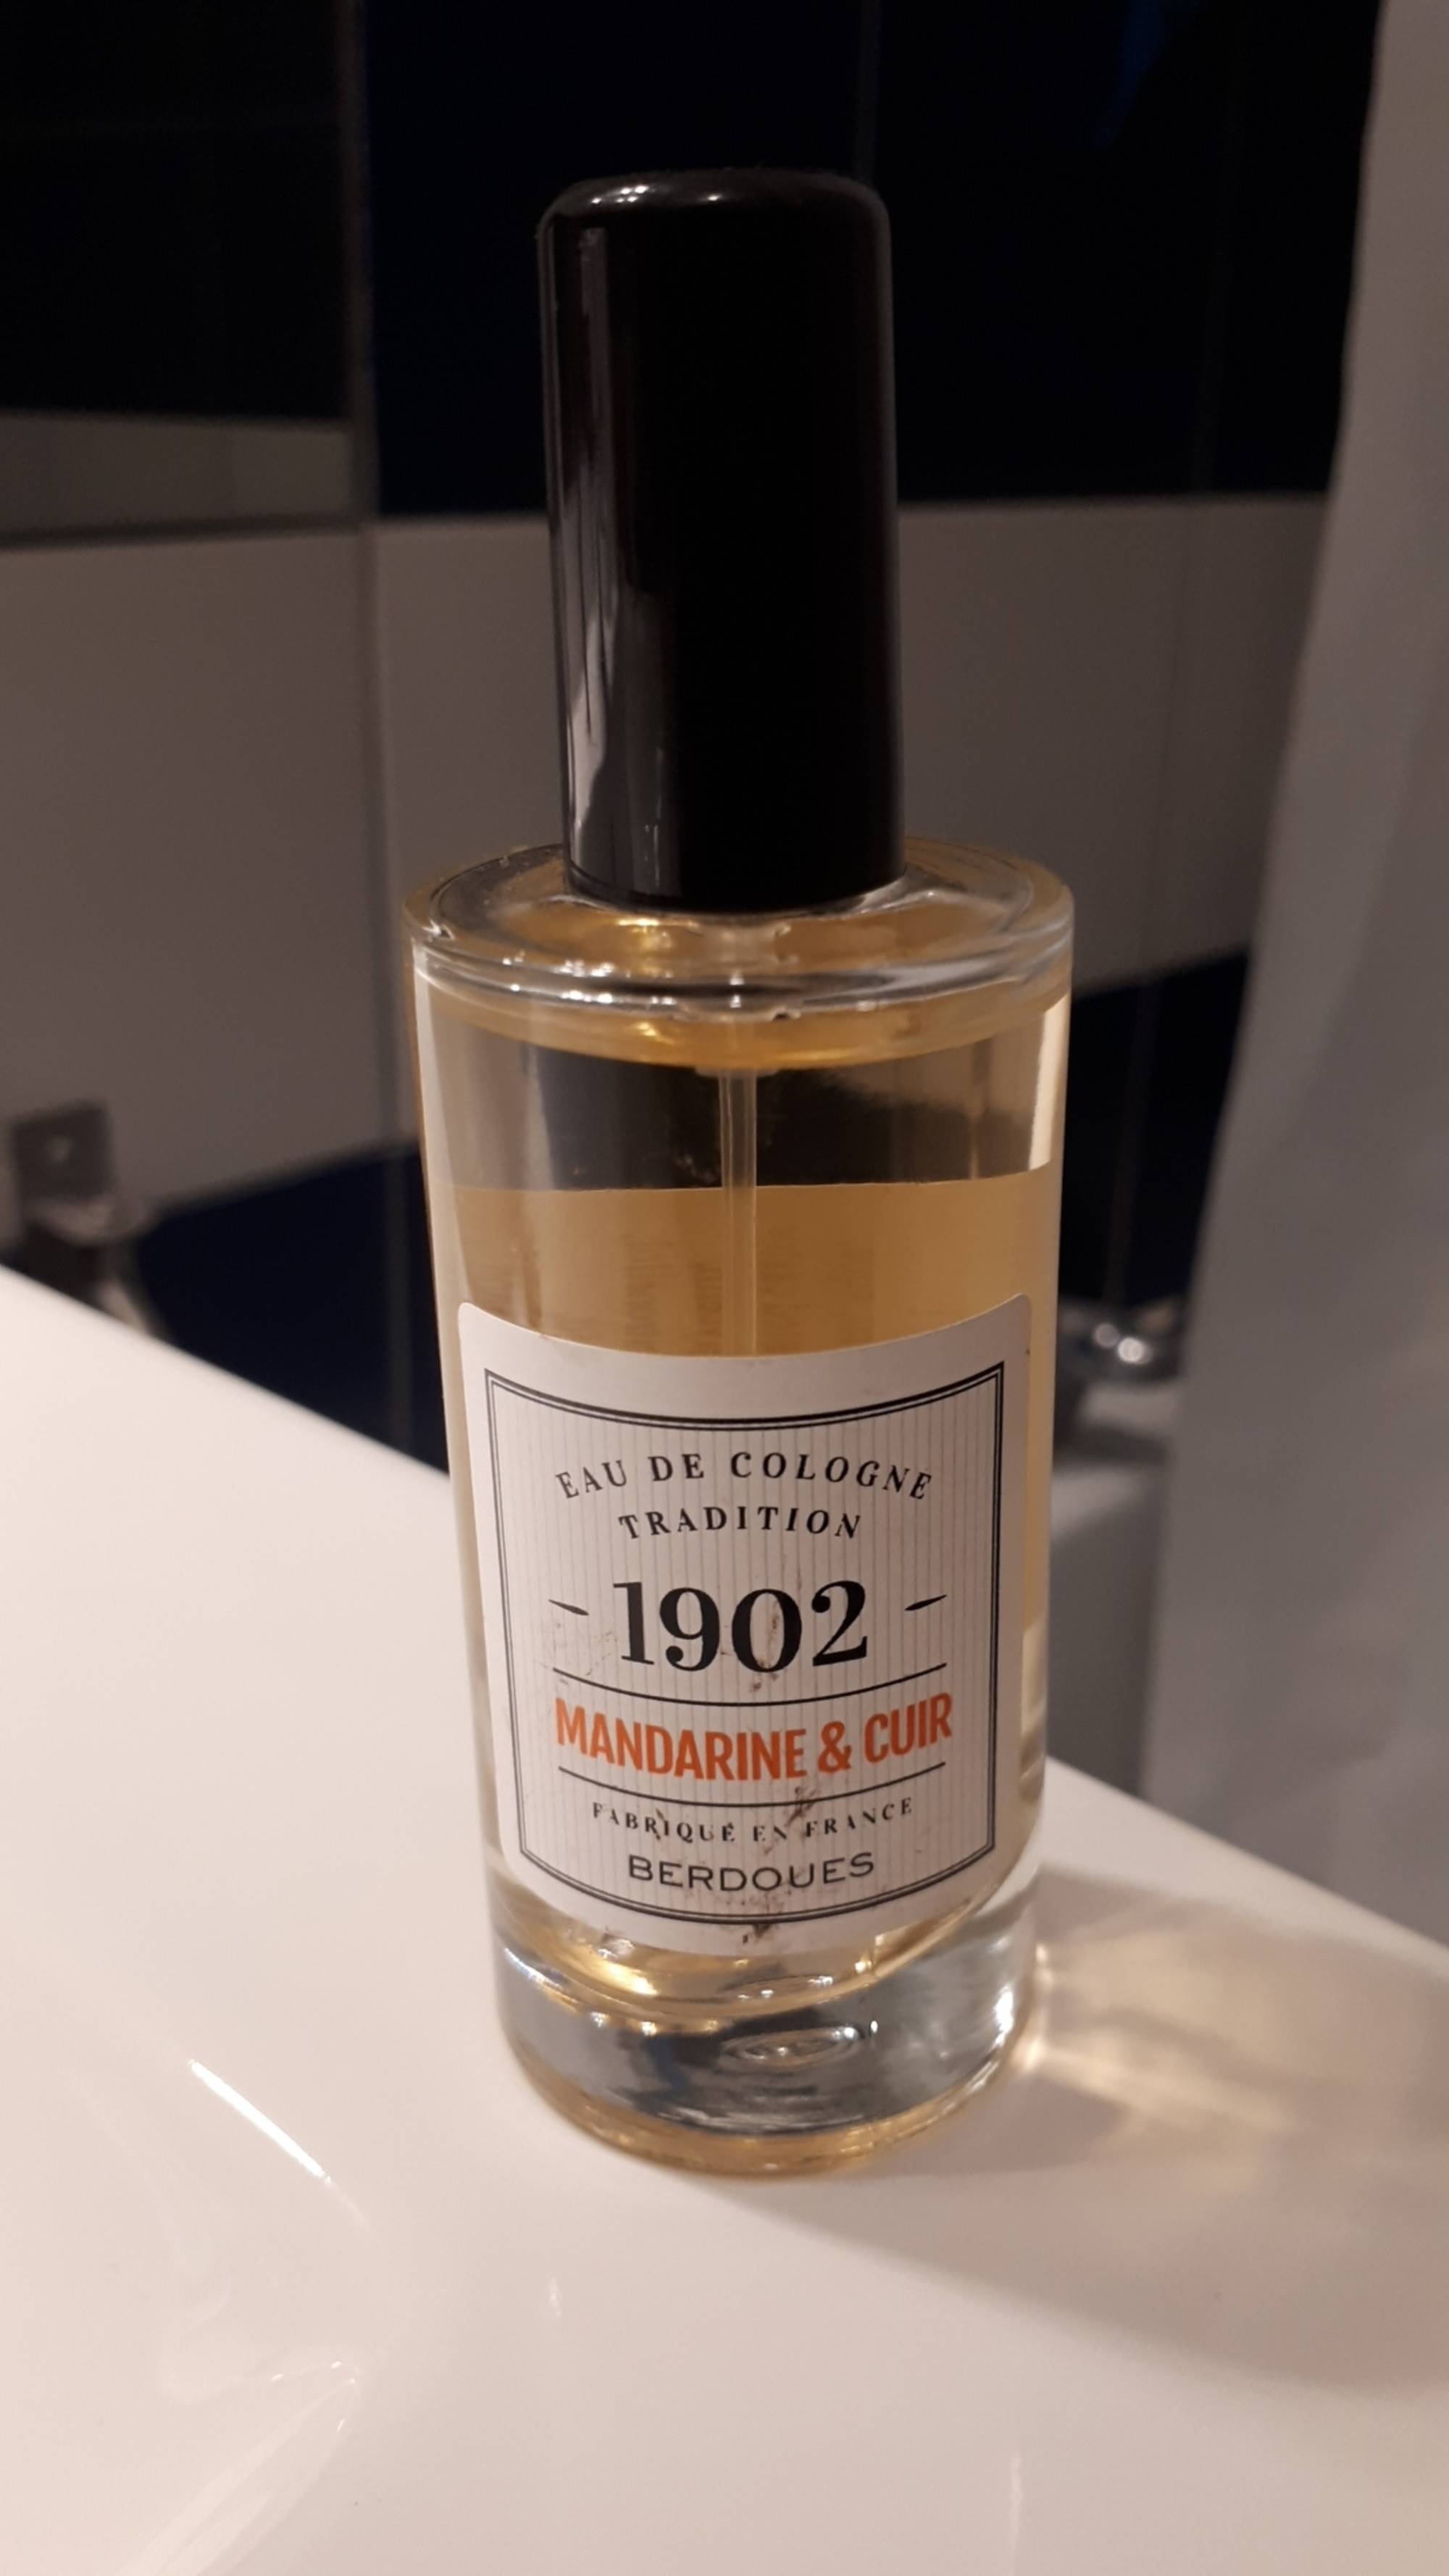 BERDOUES - Eau de cologne tradition 1902 mandarine & cuir